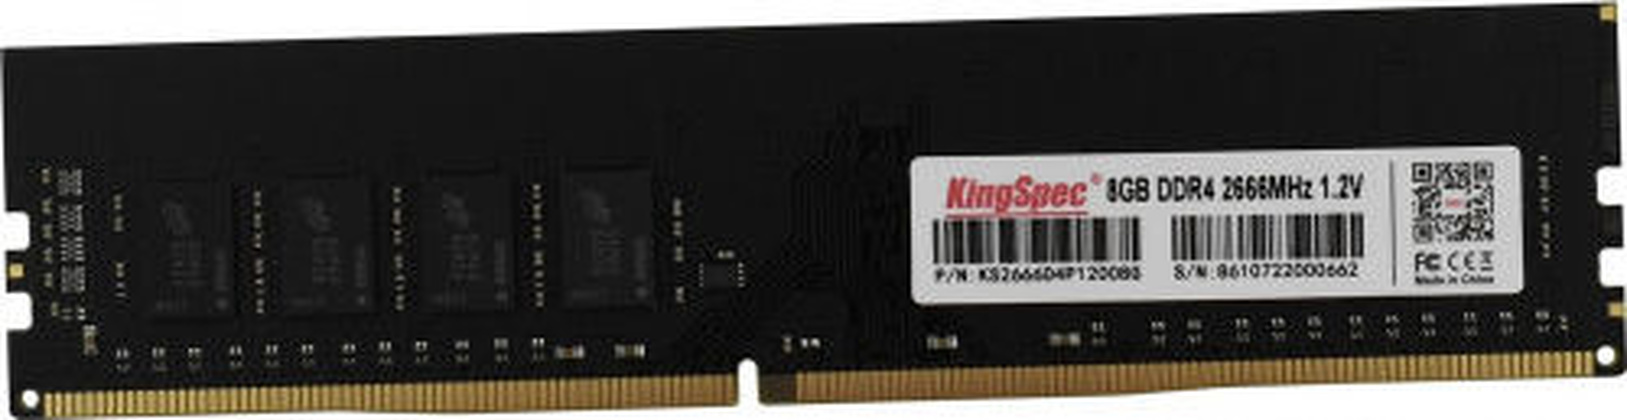 Модуль памяти DDR4 2666Mhz - 8Gb(1x8Gb) "KingSpec" [KS2666D4P12008G]